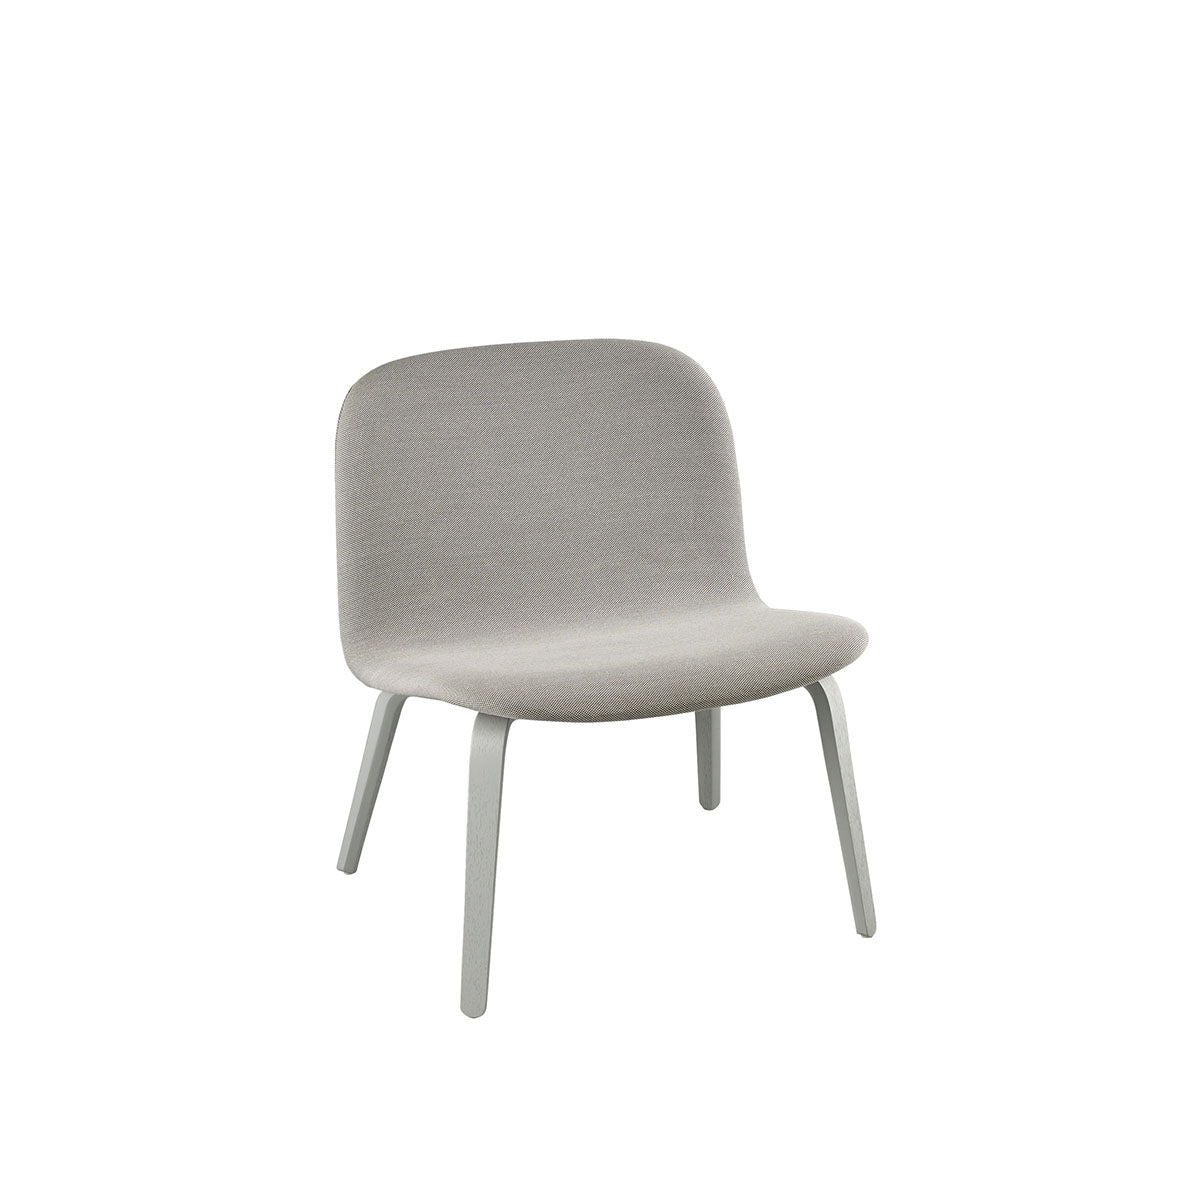 Visu Lounge Sessel in Grau präsentiert im Onlineshop von KAQTU Design AG. Sessel ist von Muuto